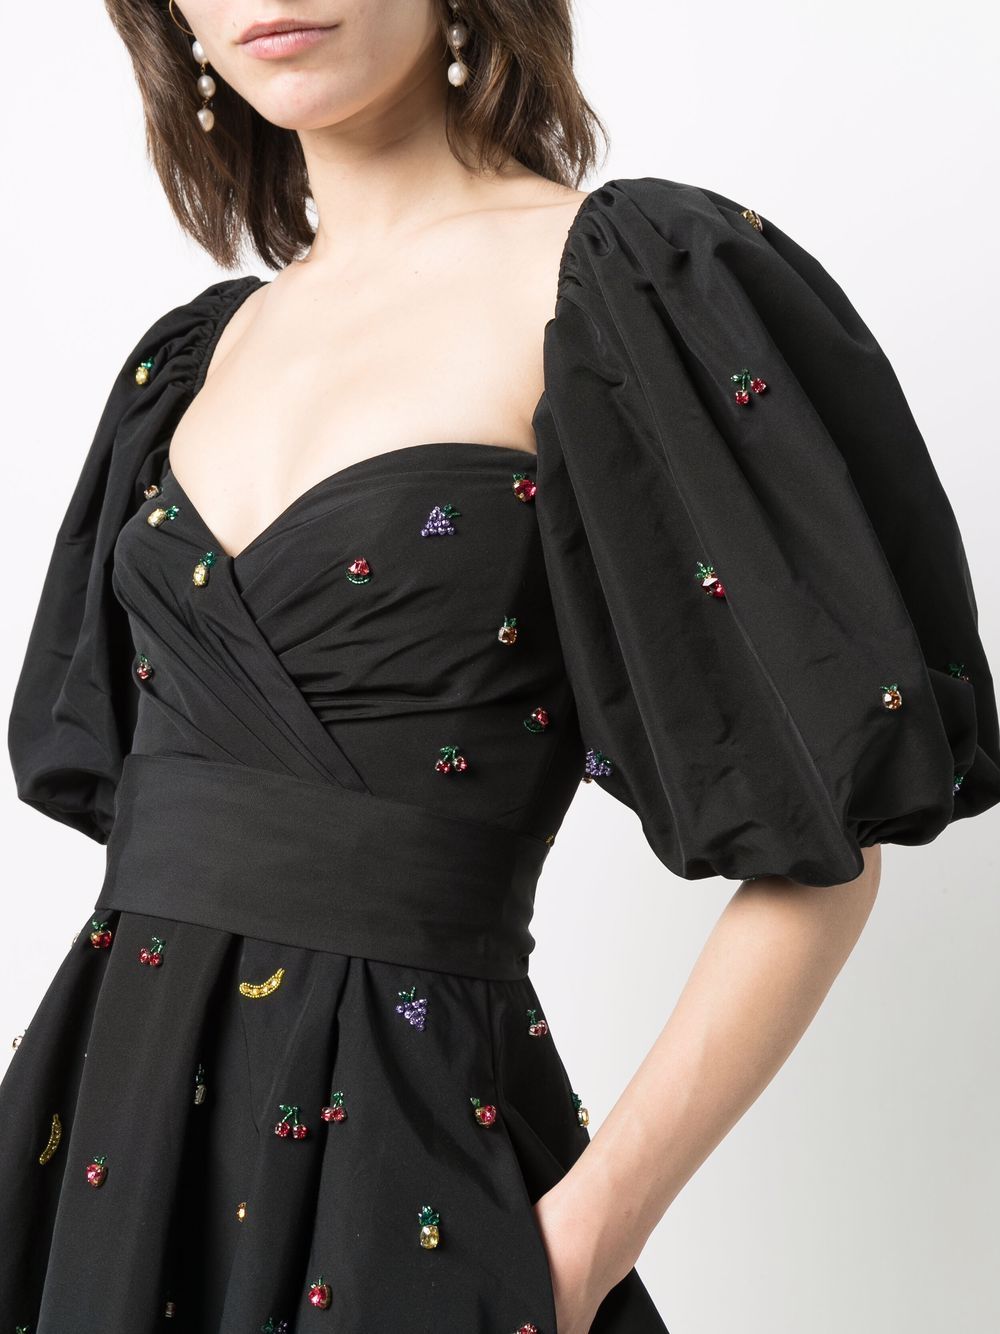 фото Valentino декорированное платье мини